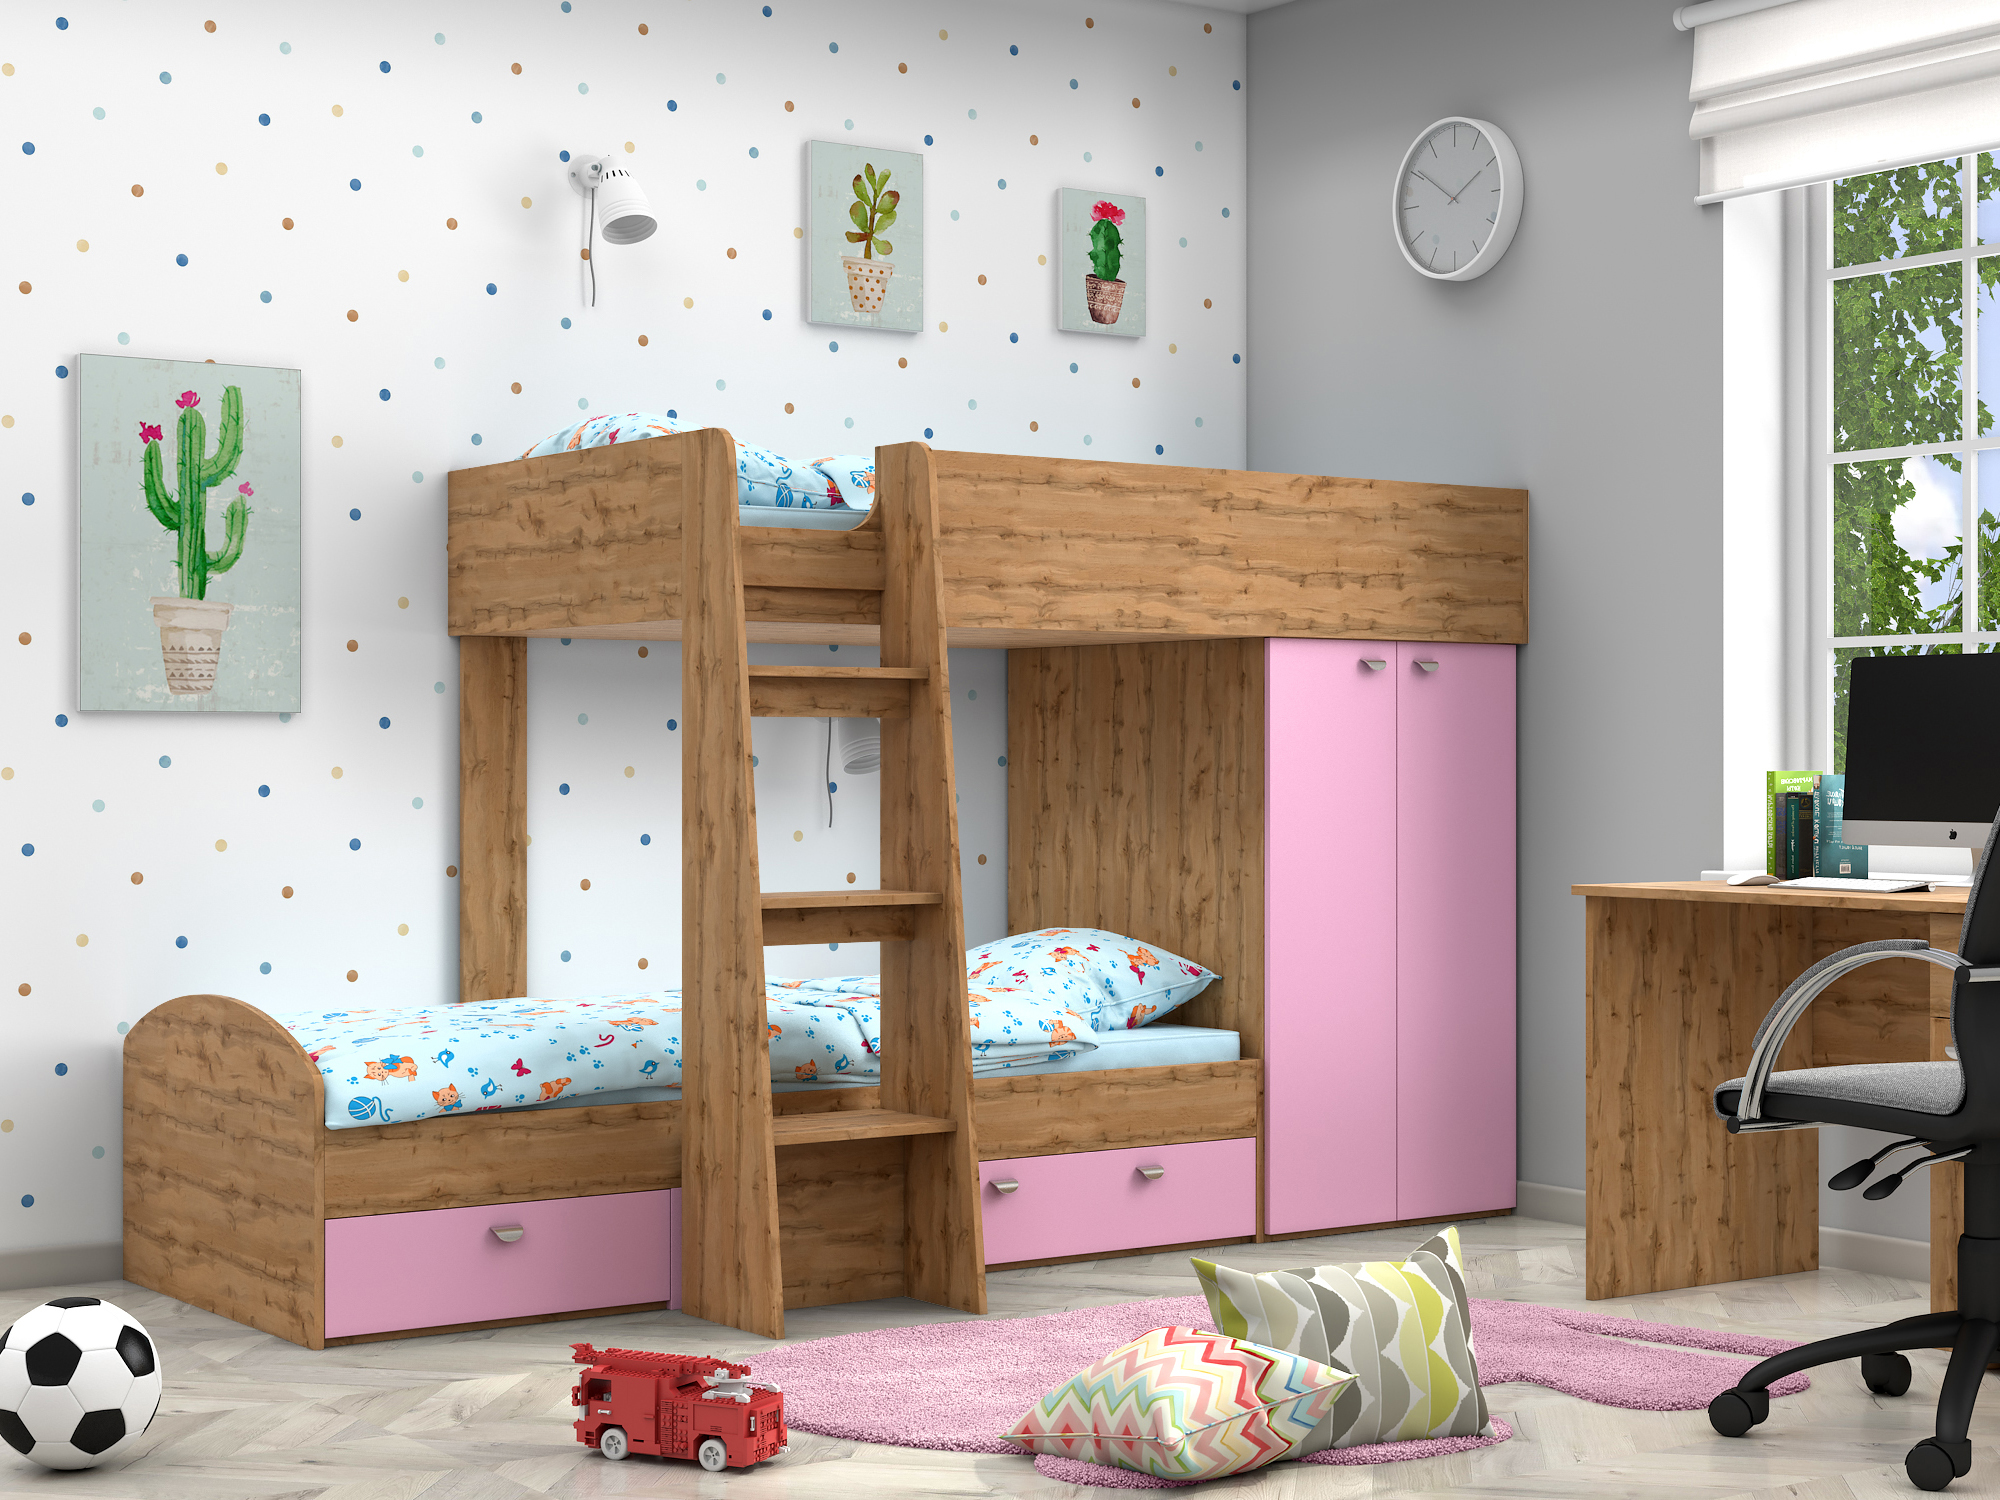 Двухъярусная кровать Golden Kids-2 (90х200) Розовый, Бежевый, ЛДСП двухъярусная кровать golden kids 2 90х200 венге коричневый темный белый бежевый лдсп